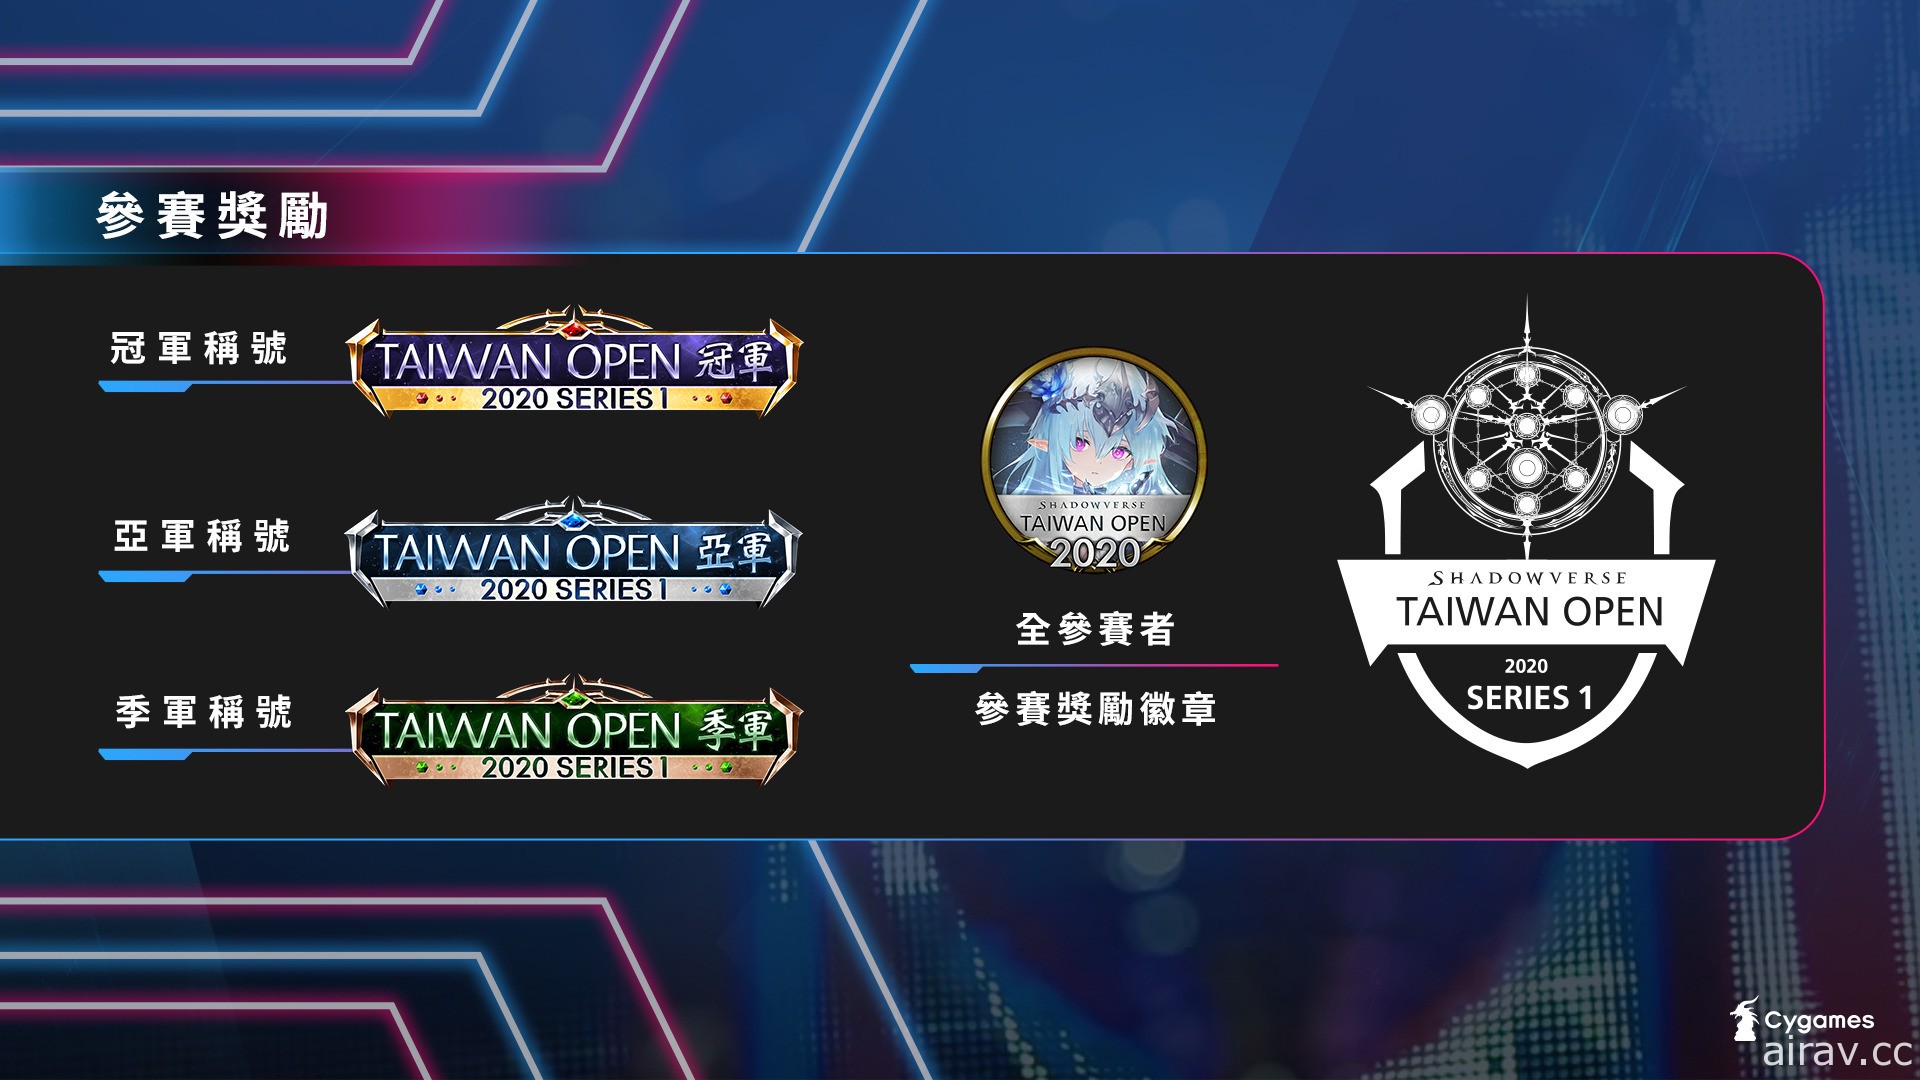 《闇影诗章》台湾官方赛事“Shadowverse Taiwan Open 2020 Series1”开放报名